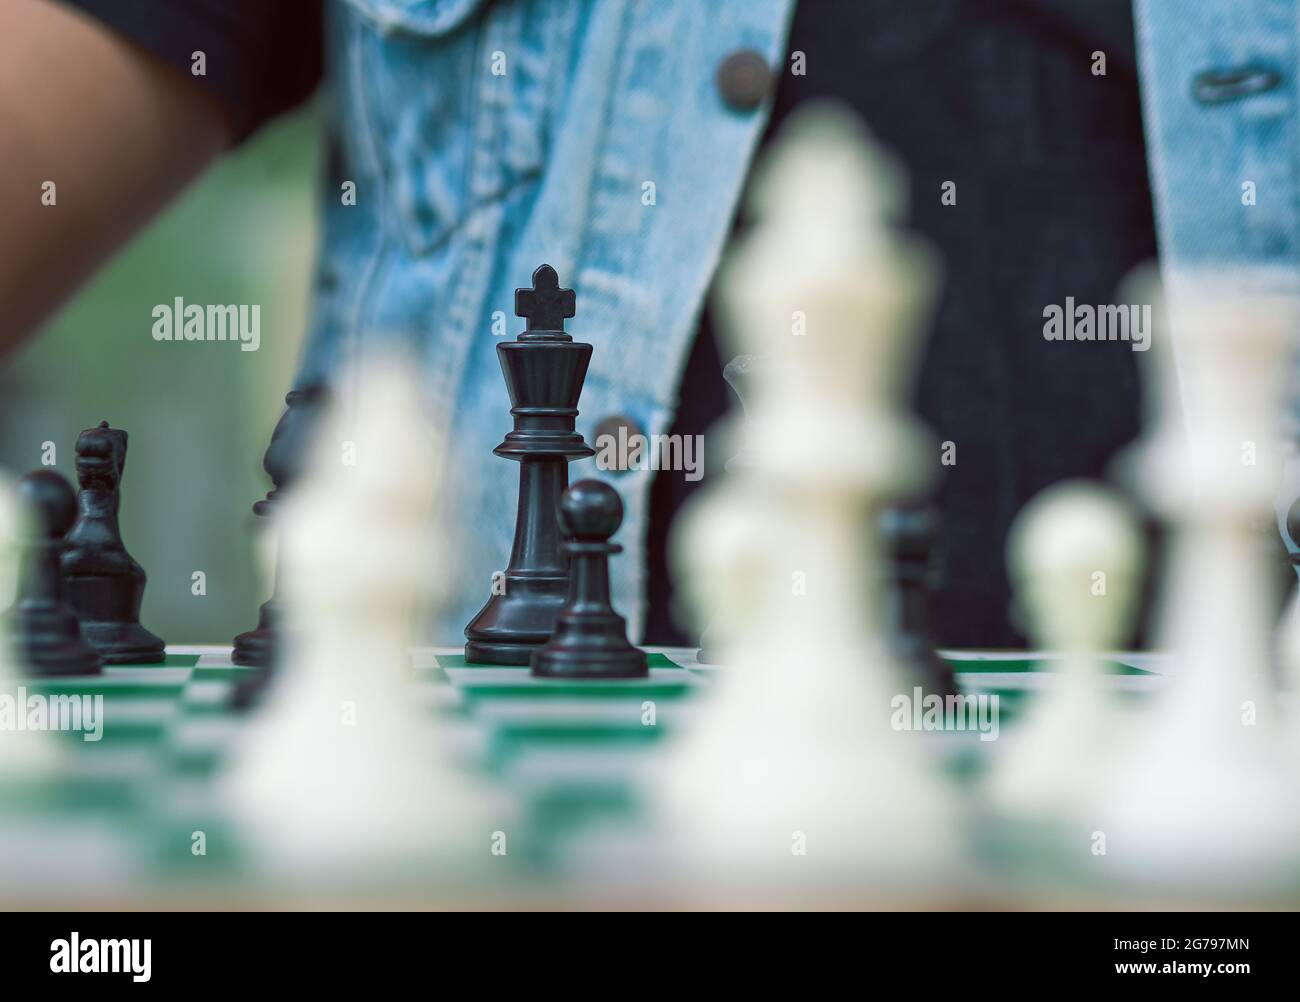 Schachspiel auf einem grünen Brett, dem schwarzen König Stockfoto